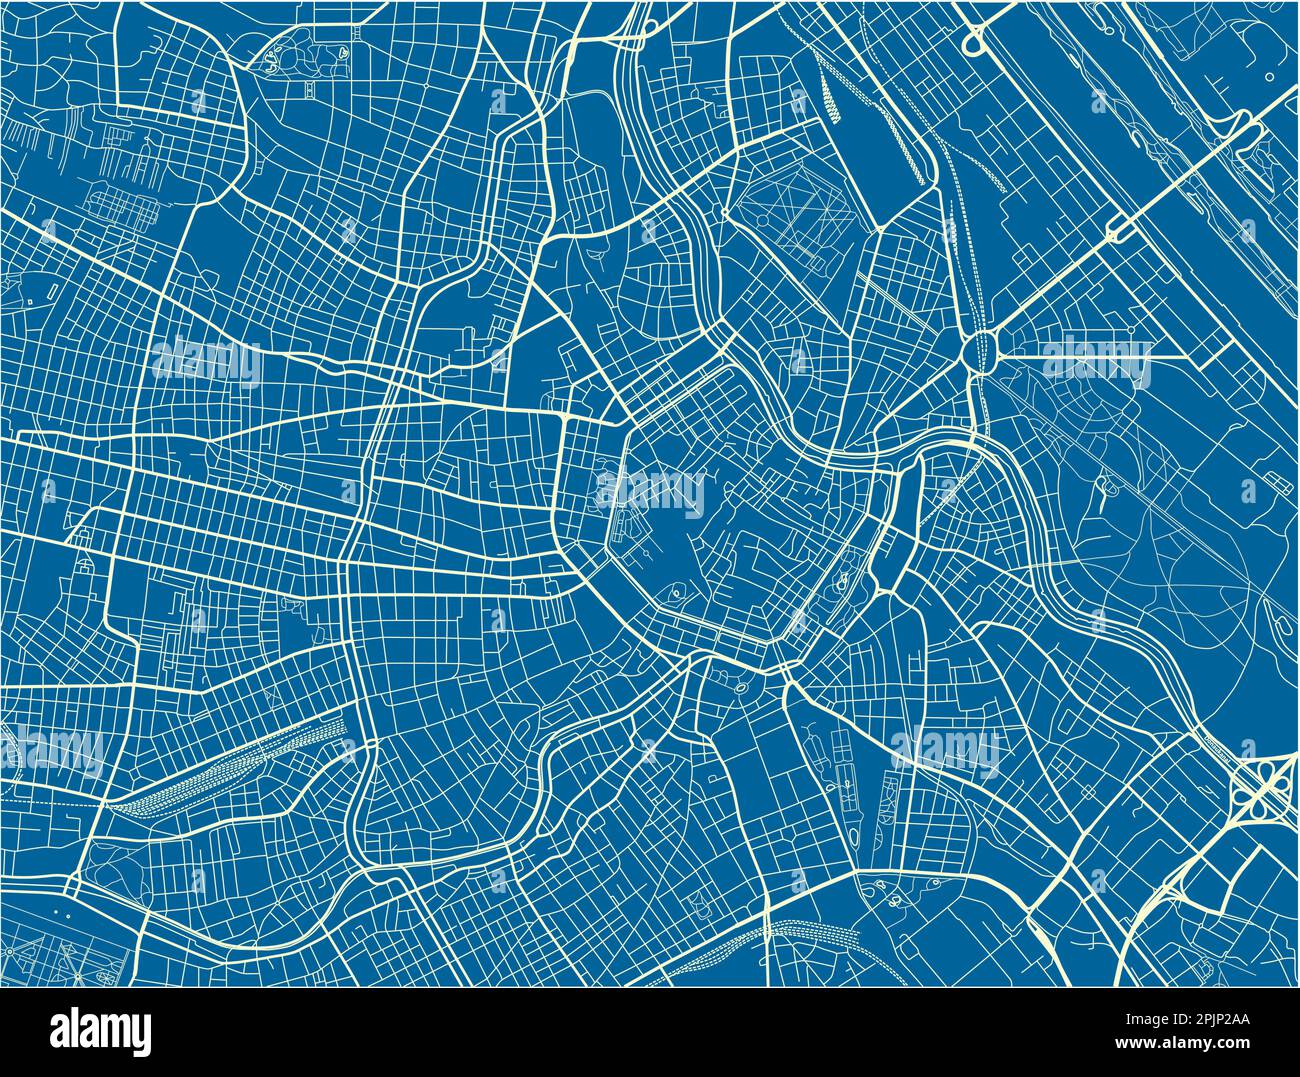 Blauer und weißer Vektorplan von Wien mit gut organisierten getrennten Schichten. Stock Vektor